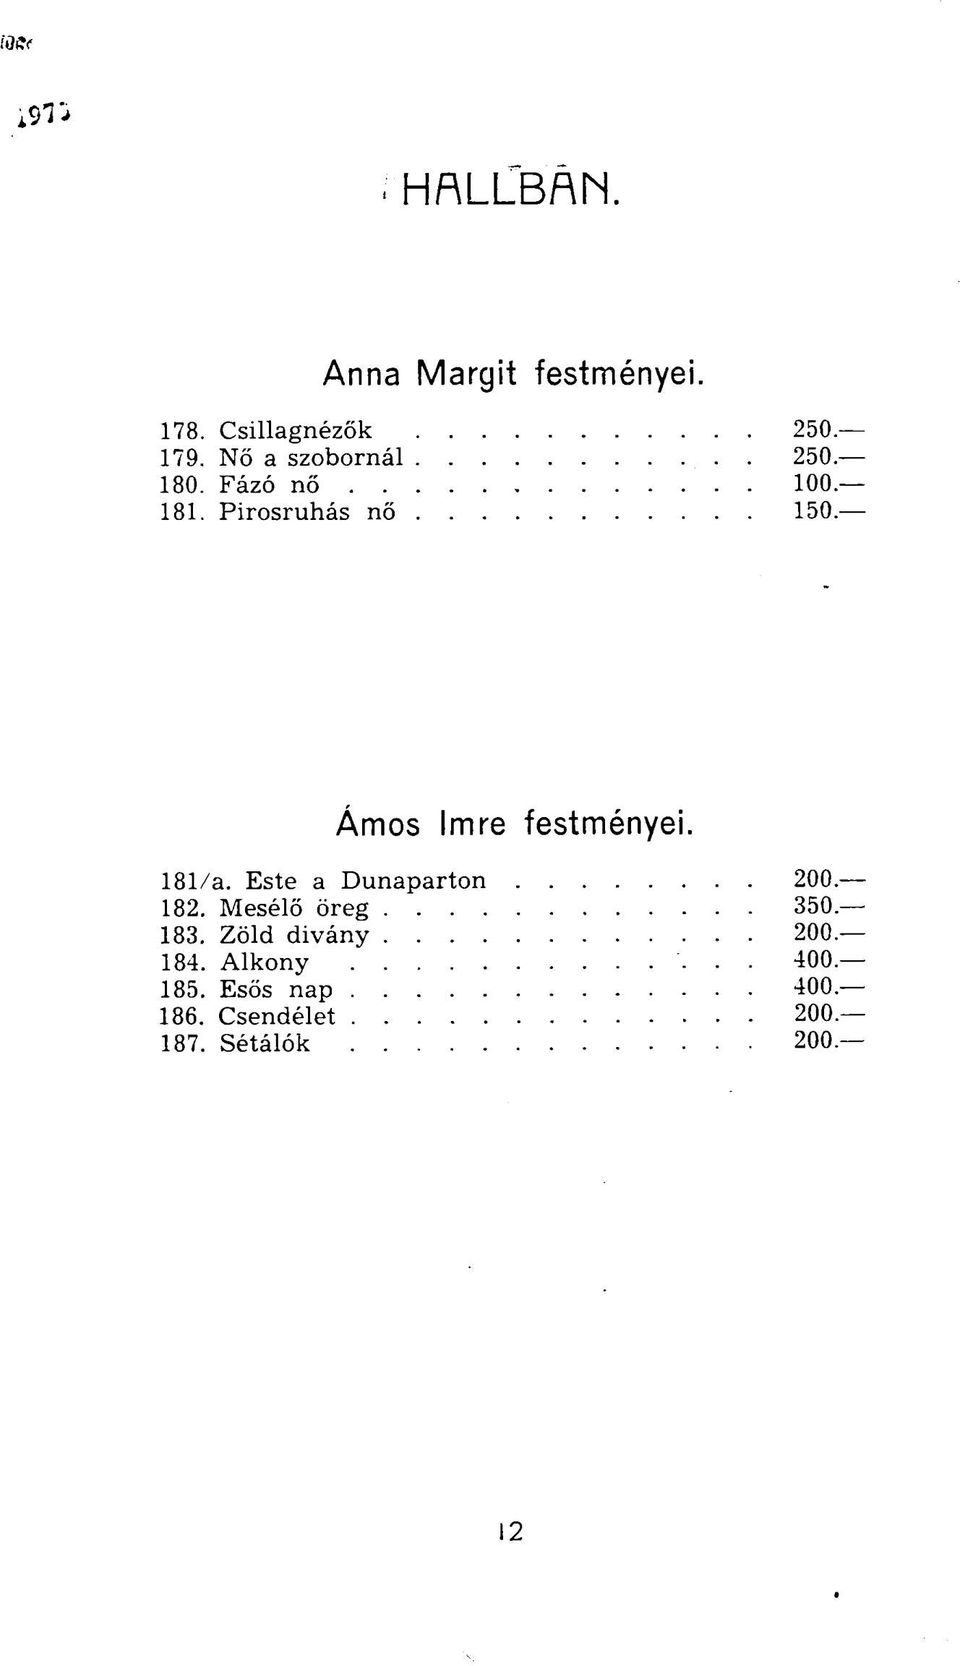 Pirosruhás nő 150 Ámos Imre festményei. 181/a.